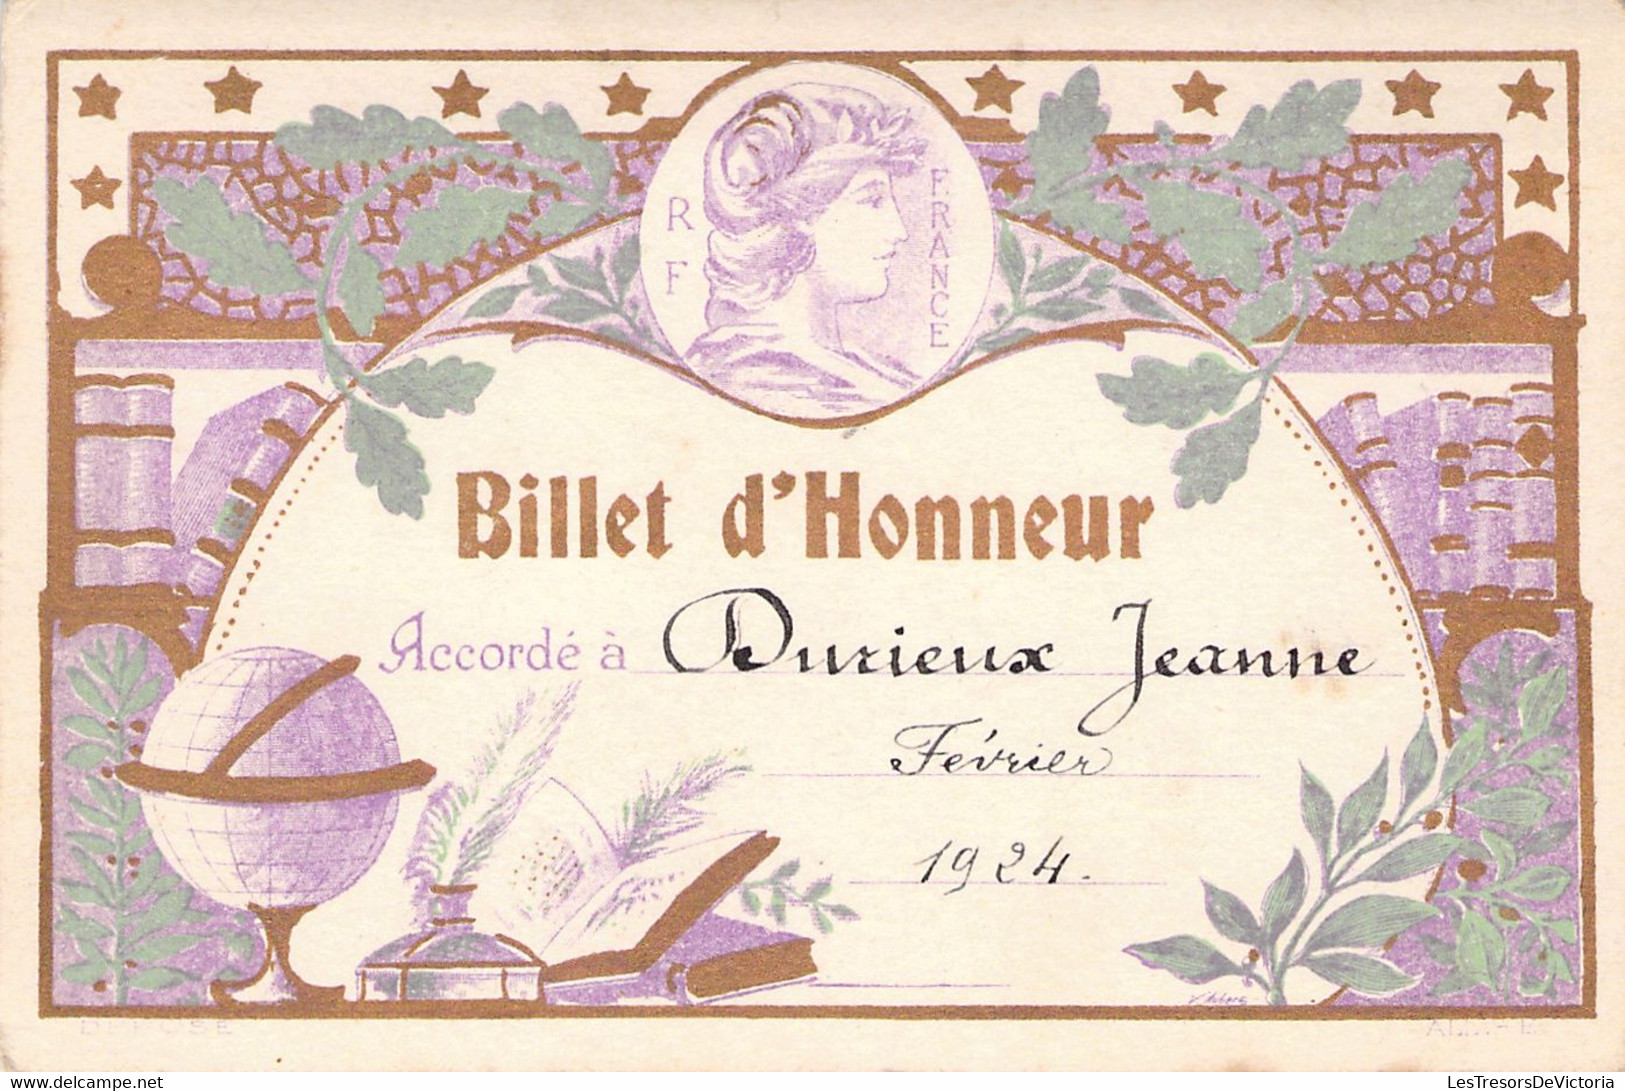 Lot De 4 Billets D'Honneur Accordé à Durieux Jeanne En 1924 - M Fontaine - France - BAISSE DE PRIX -50% - Diploma's En Schoolrapporten